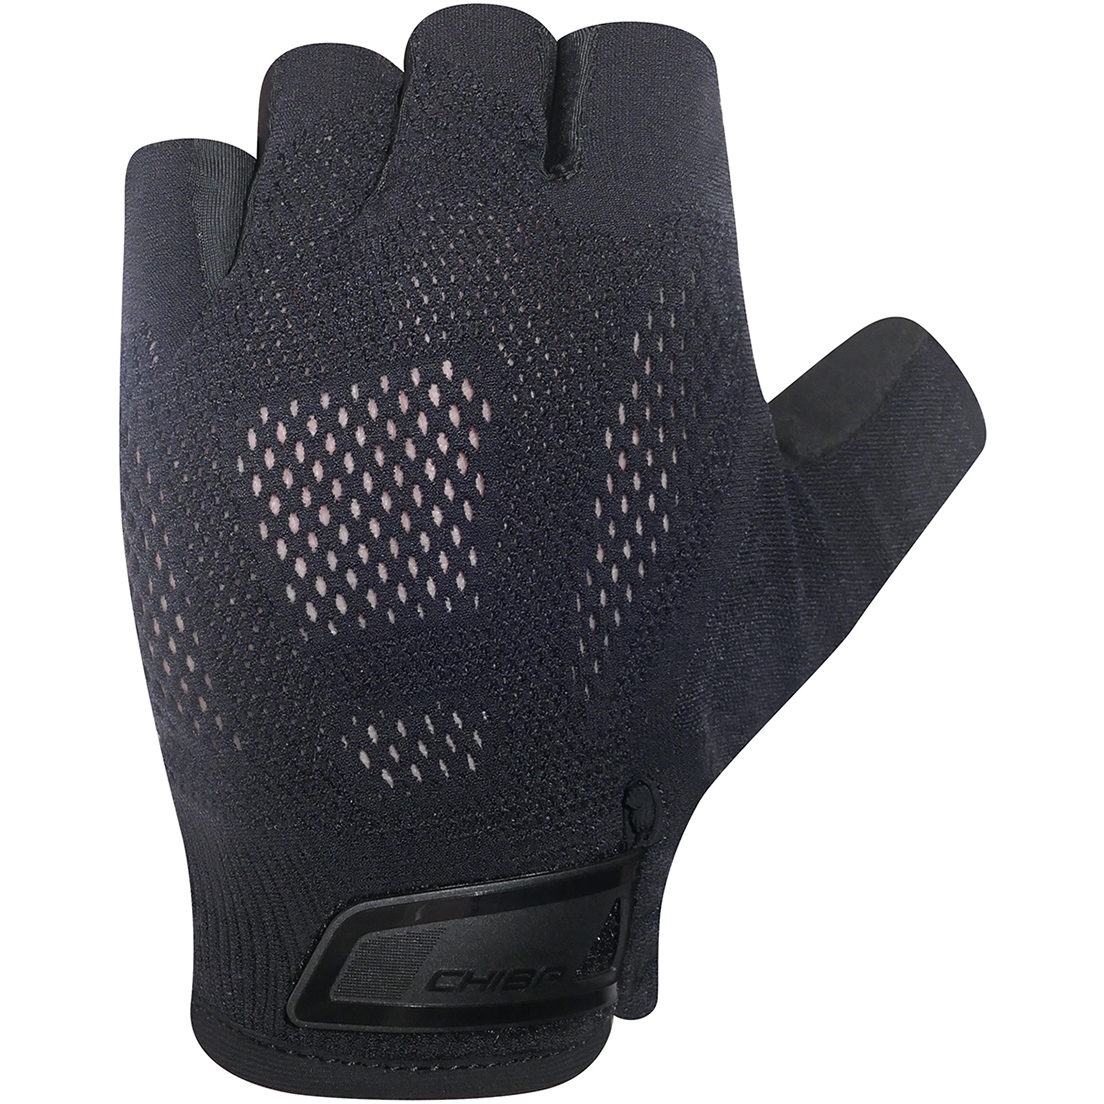 Produktbild von Chiba BioXCell Road Kurzfinger-Handschuhe - schwarz